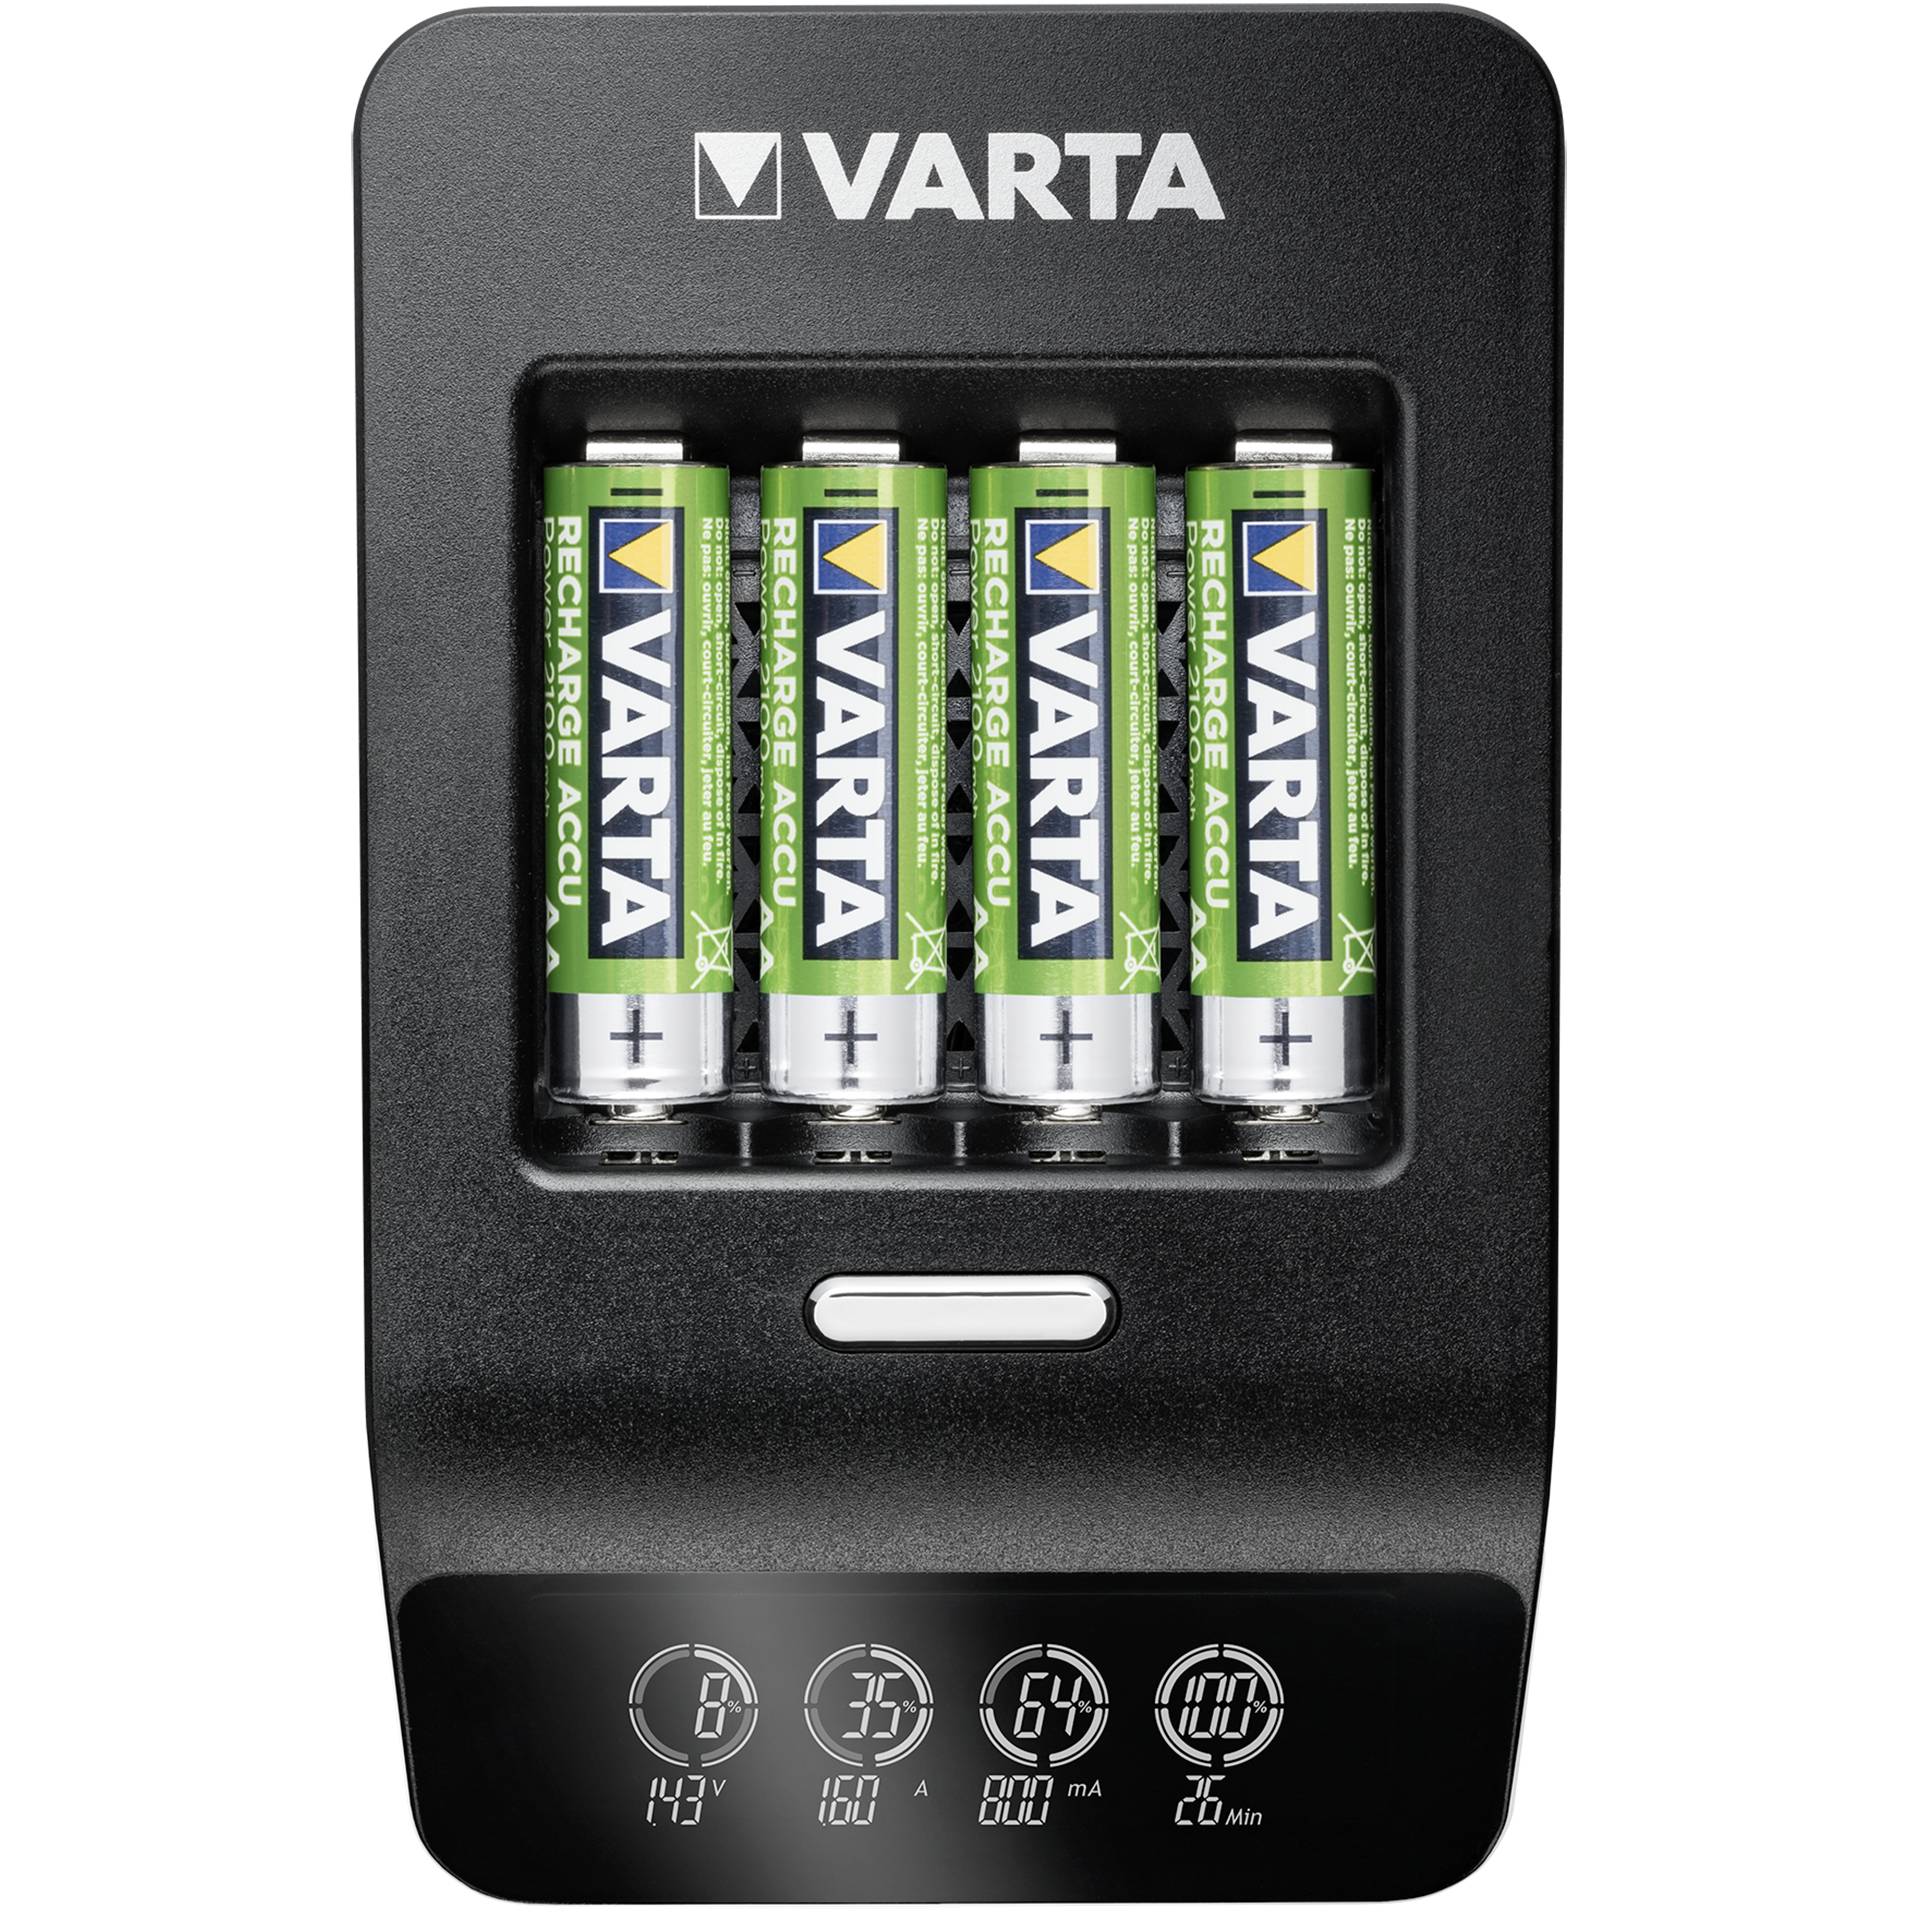 Varta LCD Ultra Fast Charger+ incl. 4 Batt. 2100 mAh AA + 12